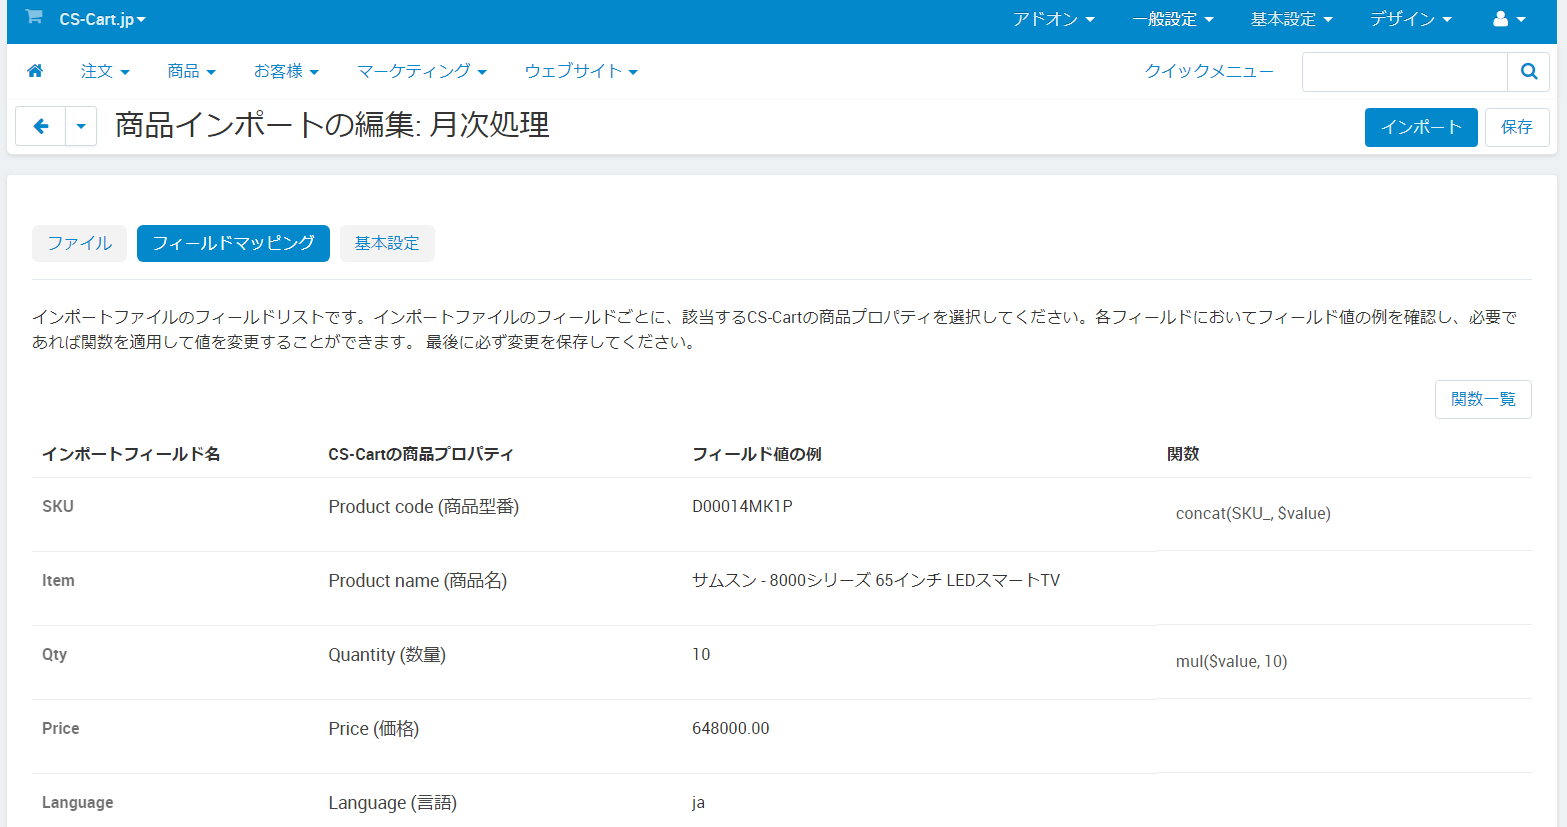 商品インポート - CS-Cartモール版 オンラインマニュアル - v4.13.2-jp-1